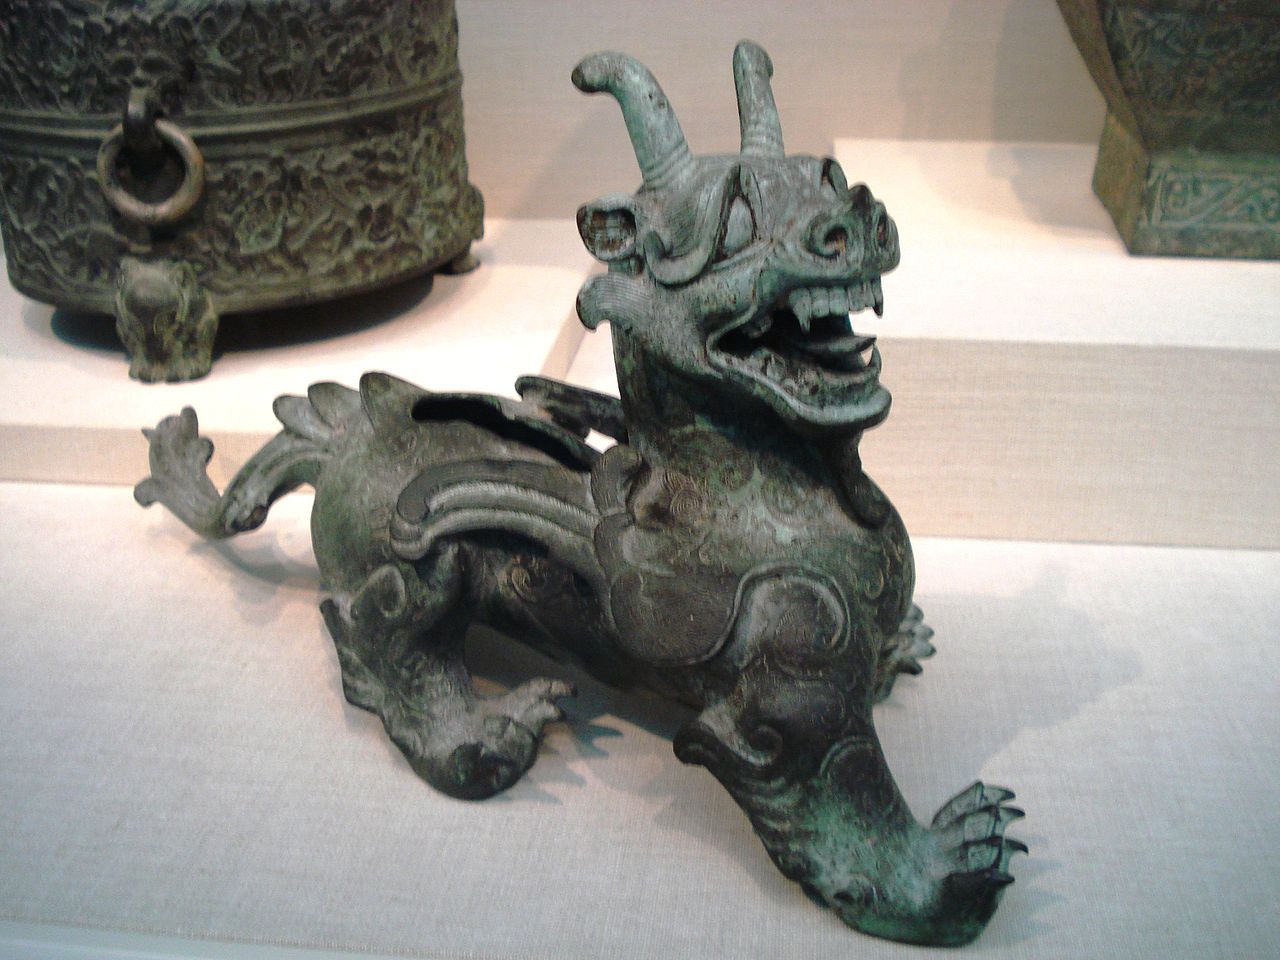 jedno z najbardziej znanych dzieł sztuki z czasów dynastii Han